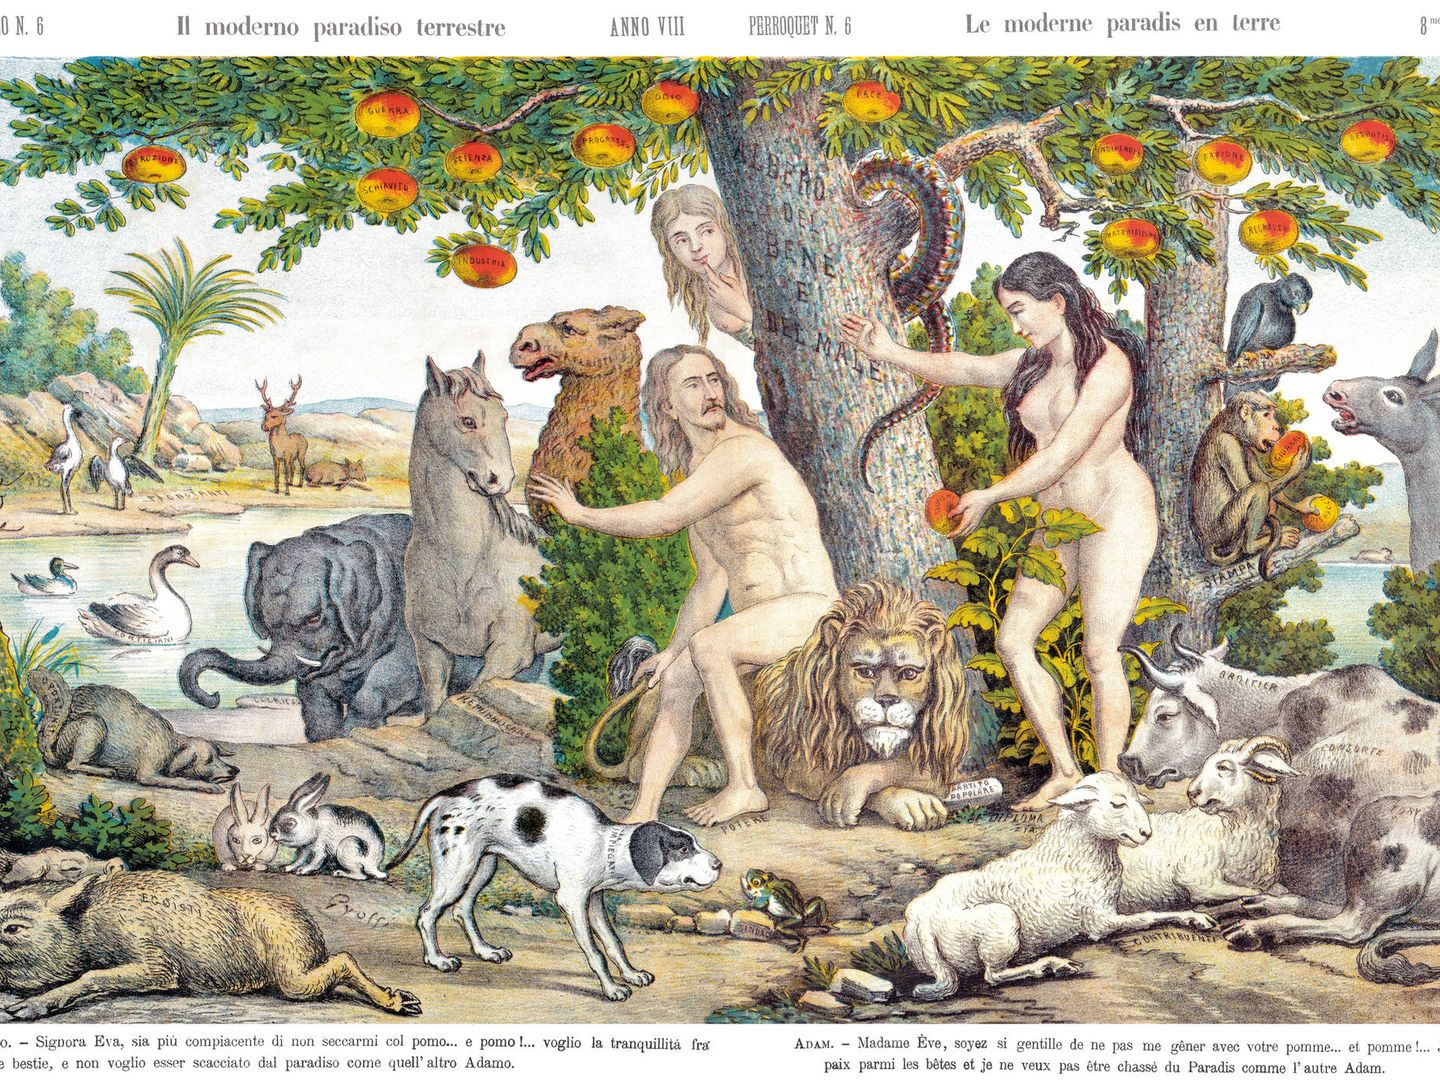 De nuevo Adán y Eva comiendo manzanas, por Augusto Grossi en 1880.